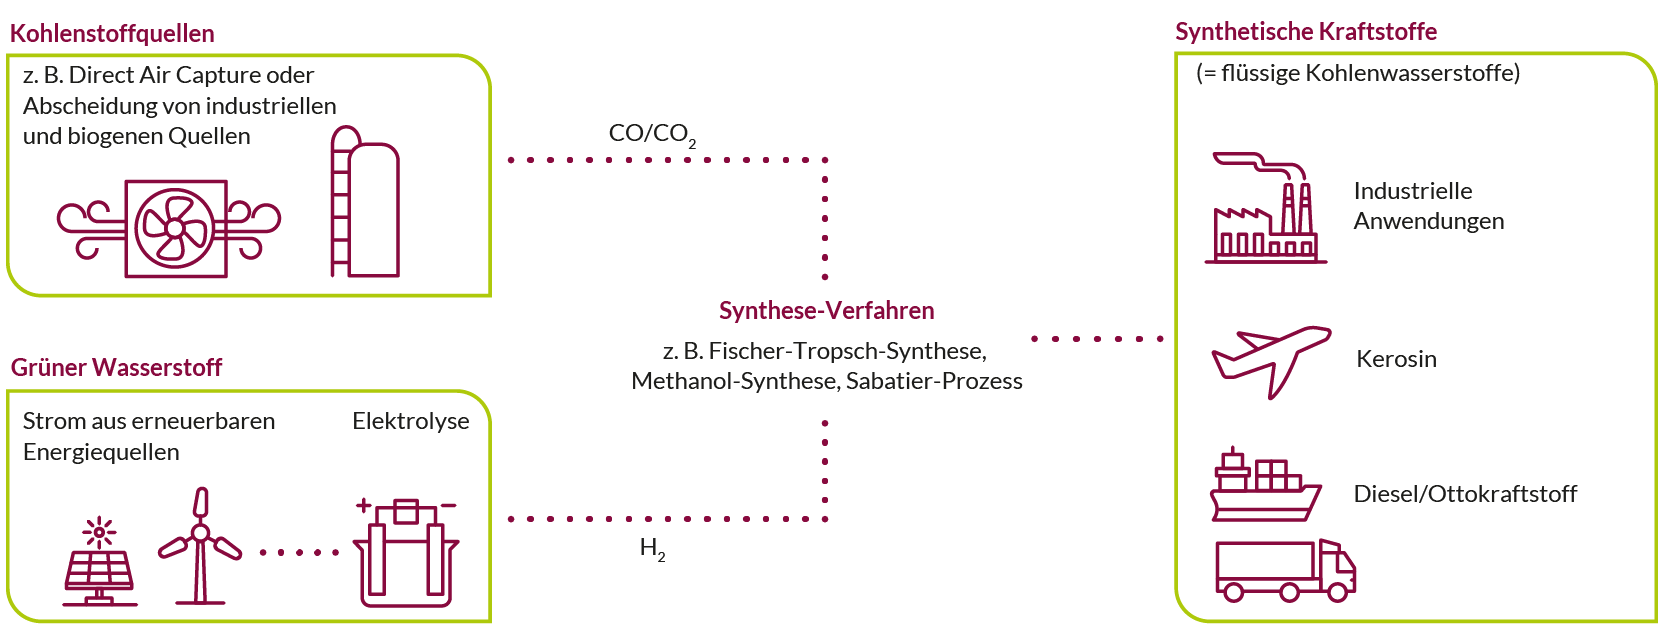 Schematische Darstellung der Herstellungs- und Nutzungspfade synthetischer Kraftstoffe.